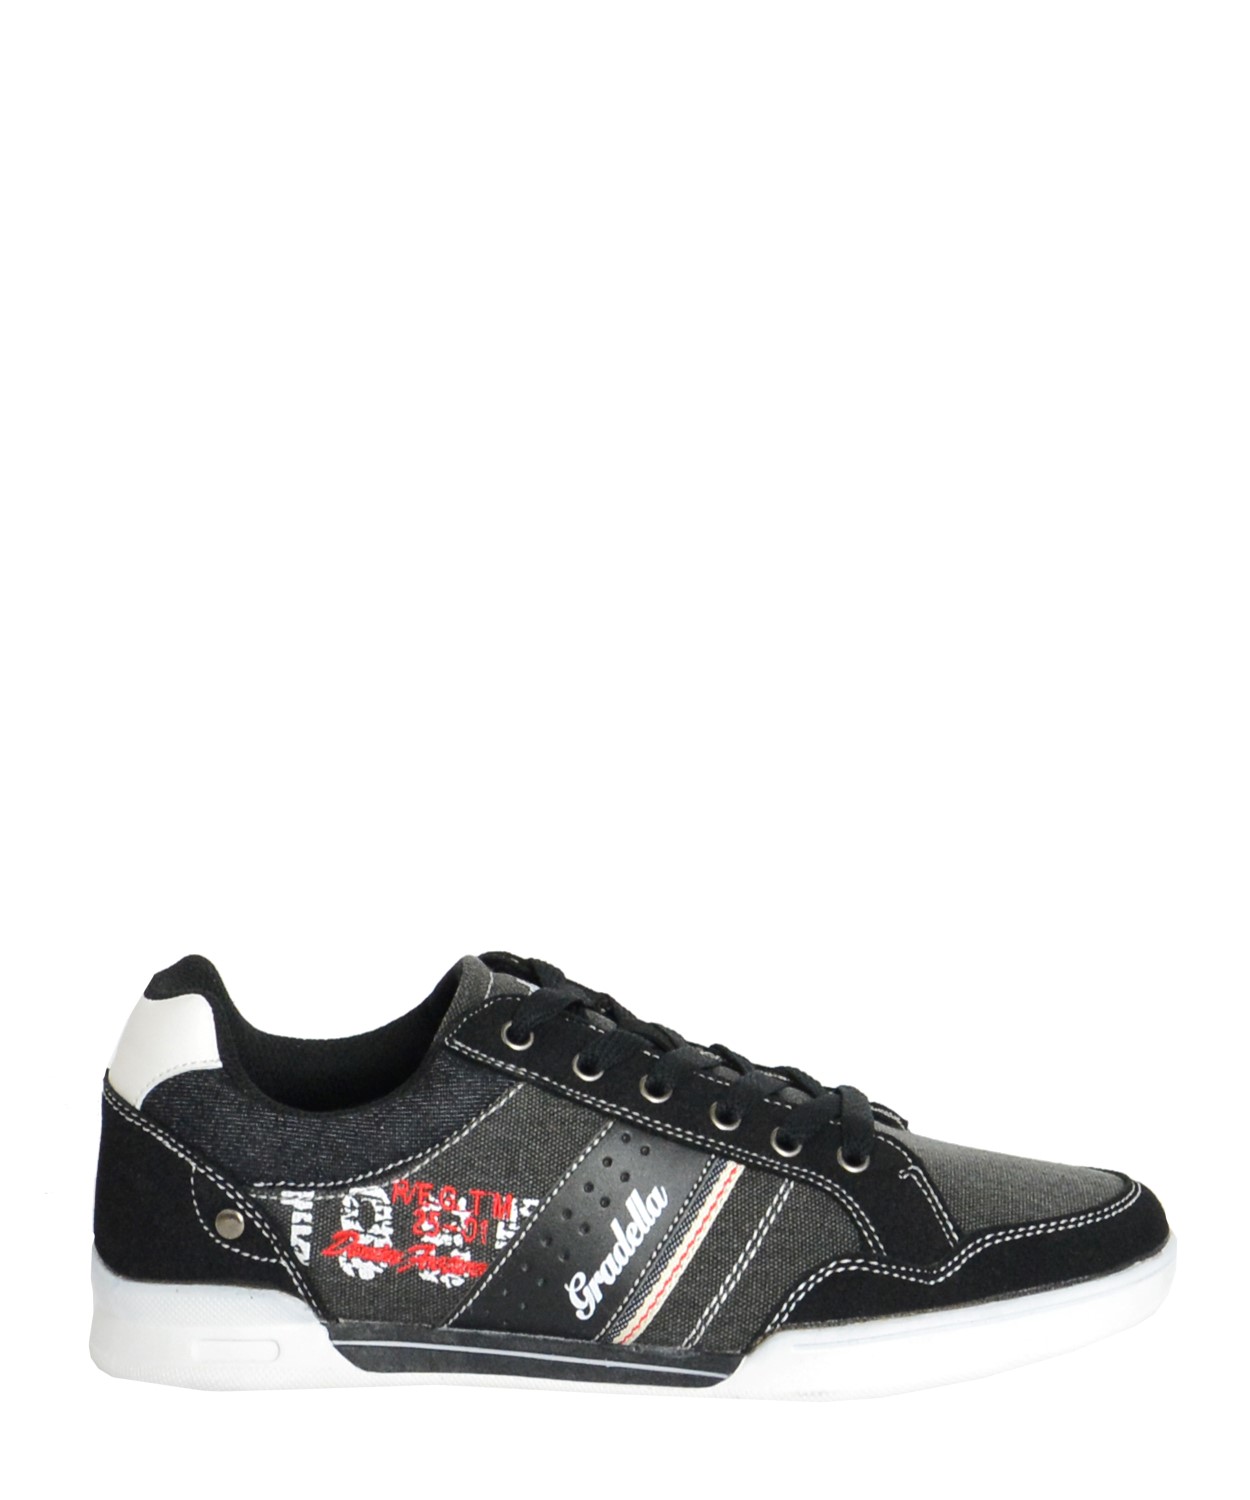 Ανδρικά Casual παπούτσια μαύρα χαμηλά κορδόνια K70422